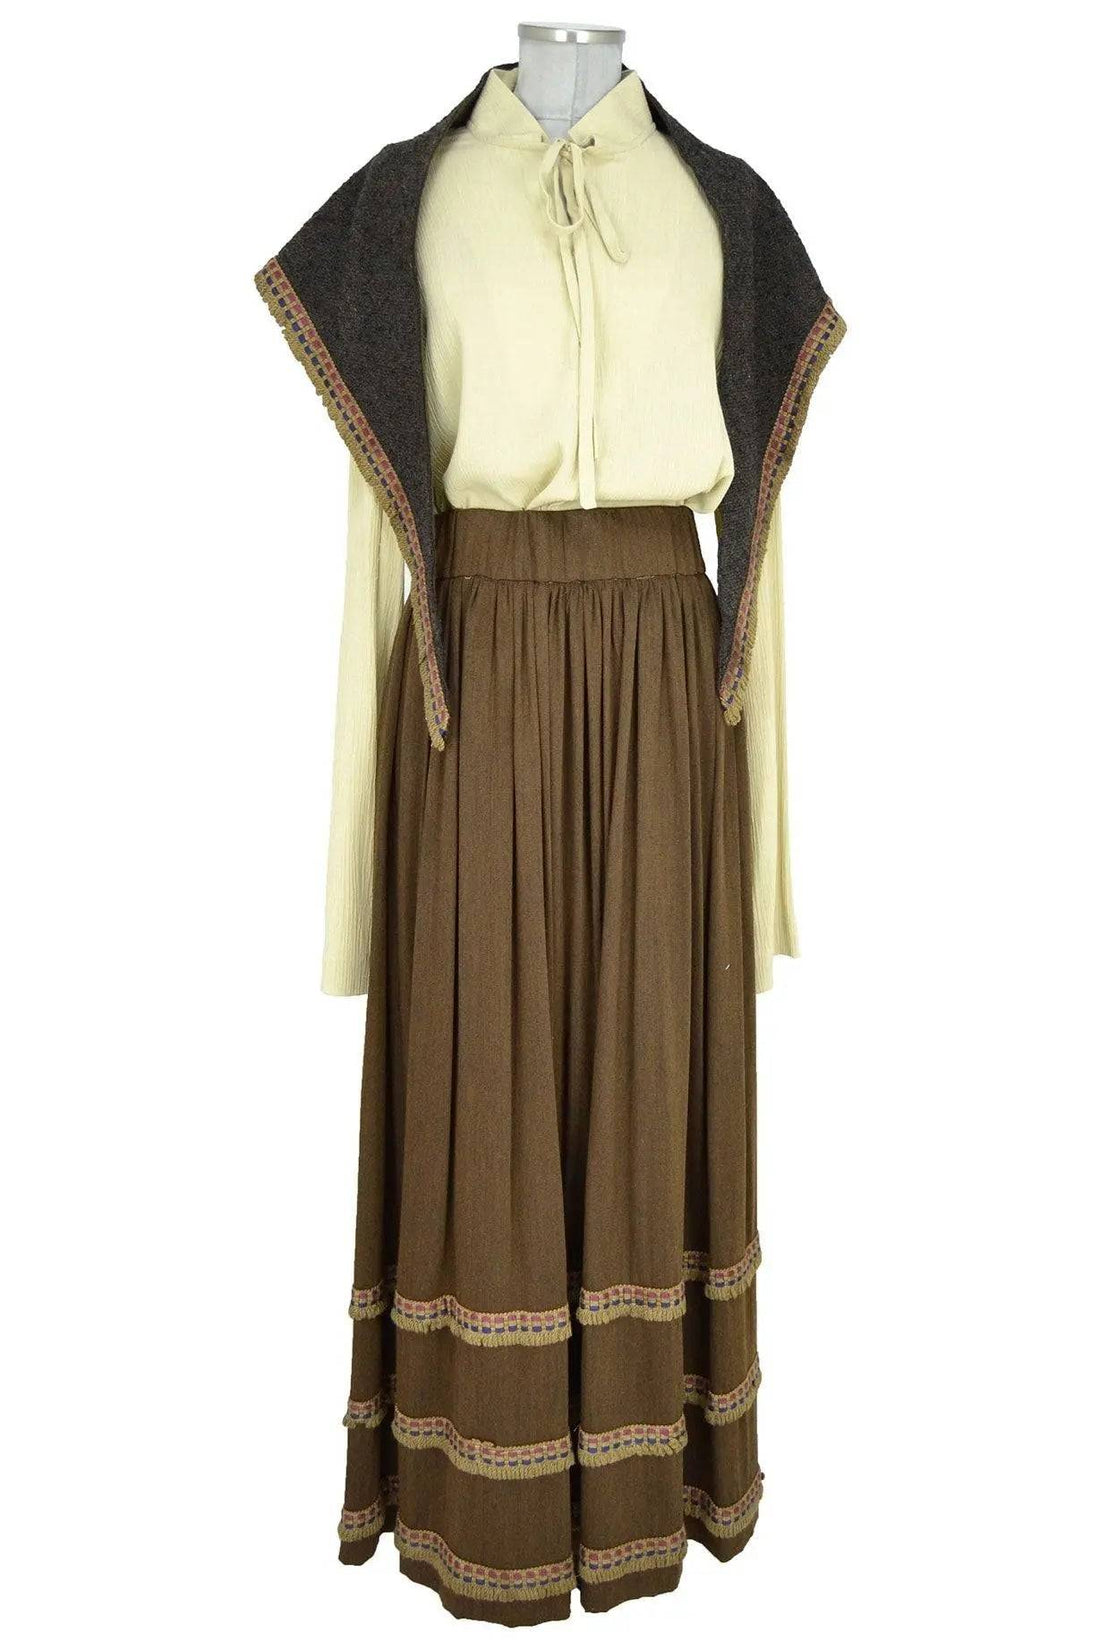 Noleggio costume donna popolana etnico adatto per rievocazioni storich